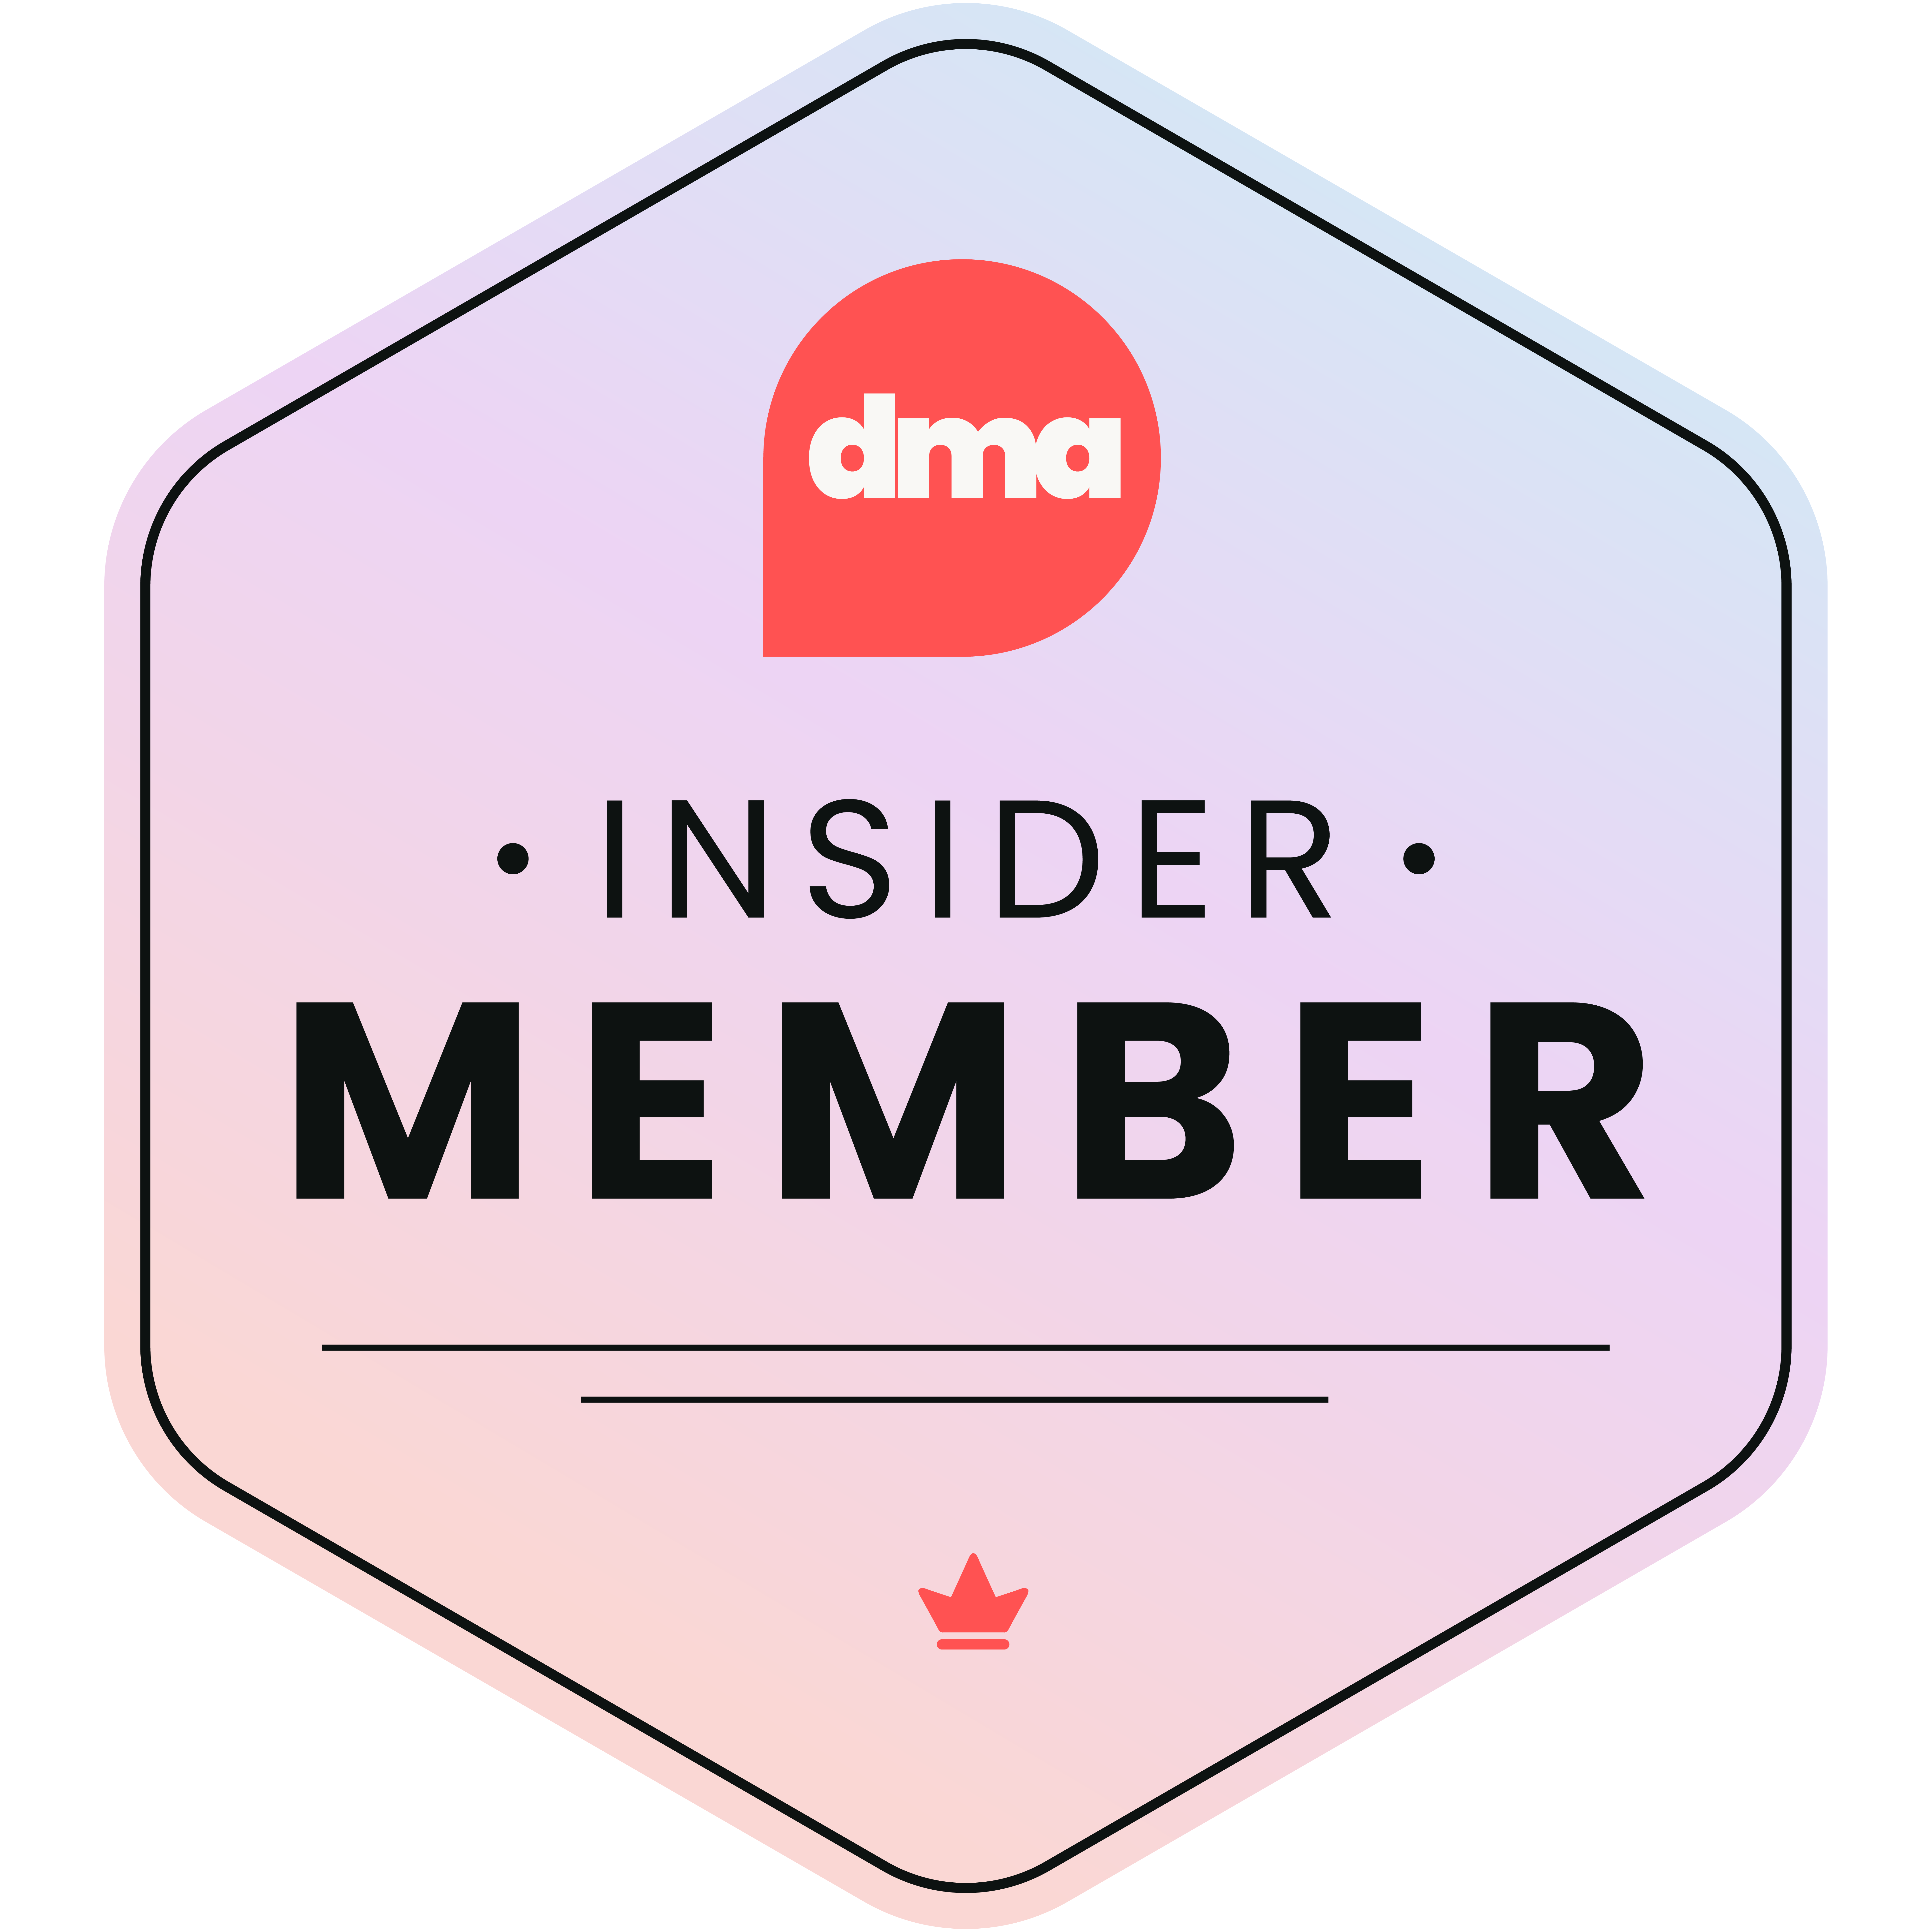 Developer marketing alliance insider membership badge